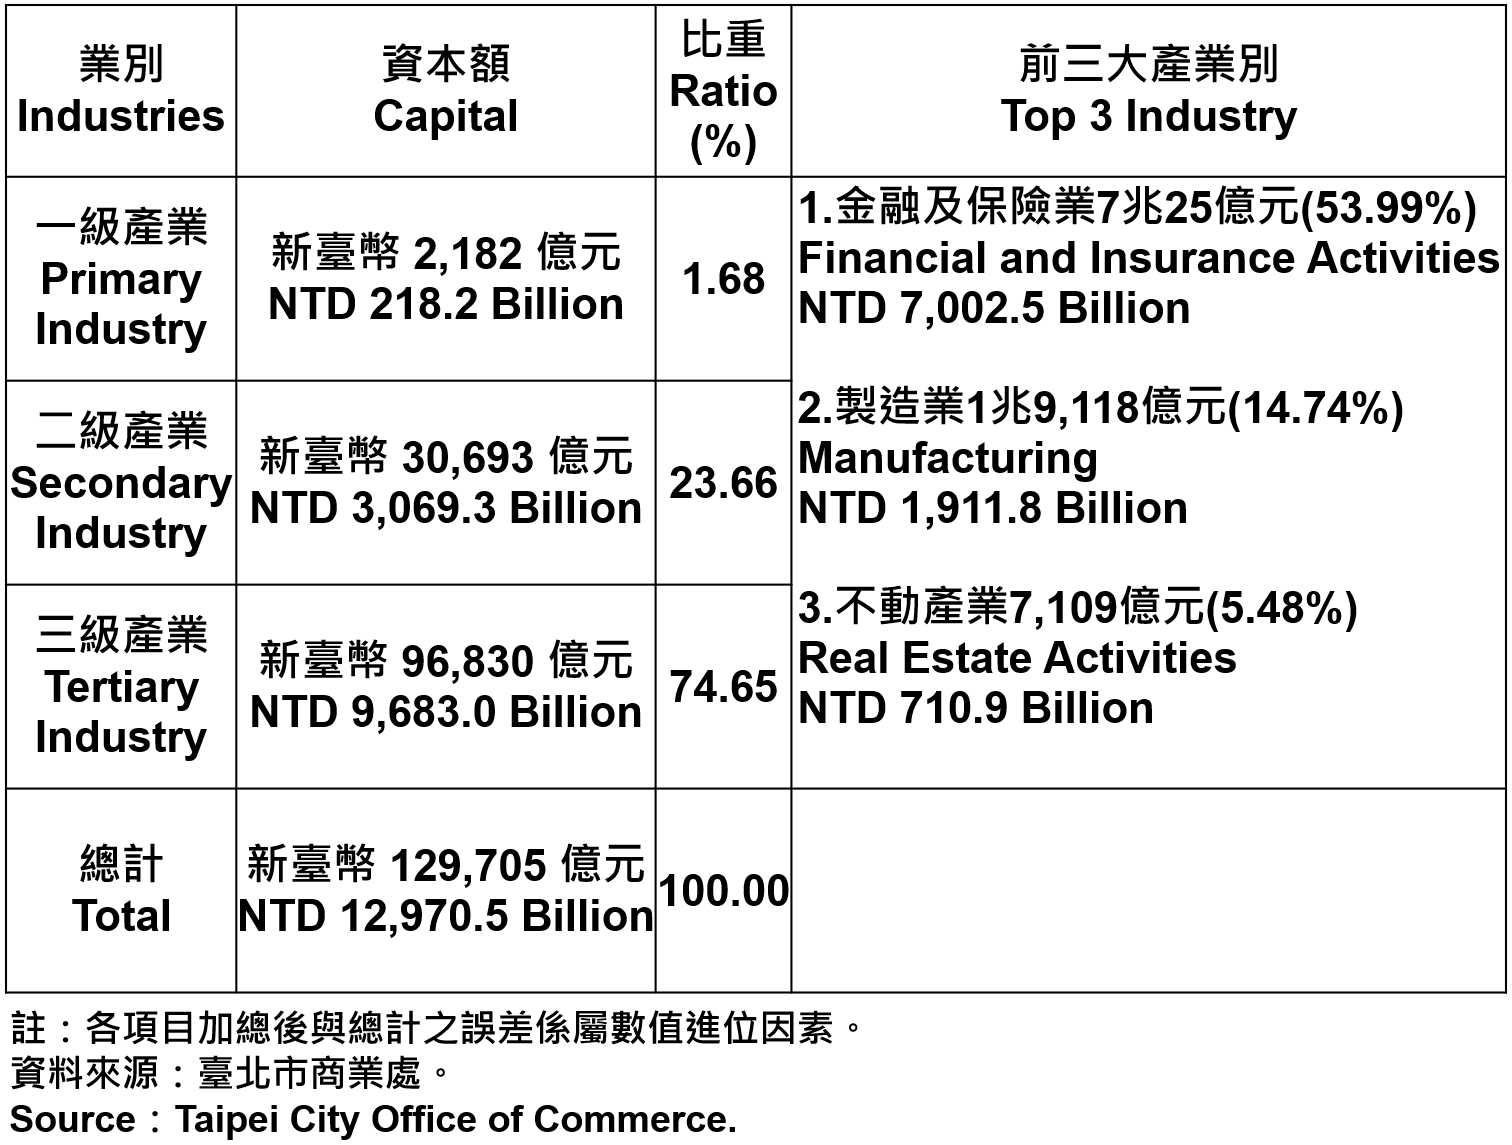 臺北市登記之公司資本總額—2020Q3 Capital for the Companies and Firms Registered in Taipei City—2020Q3